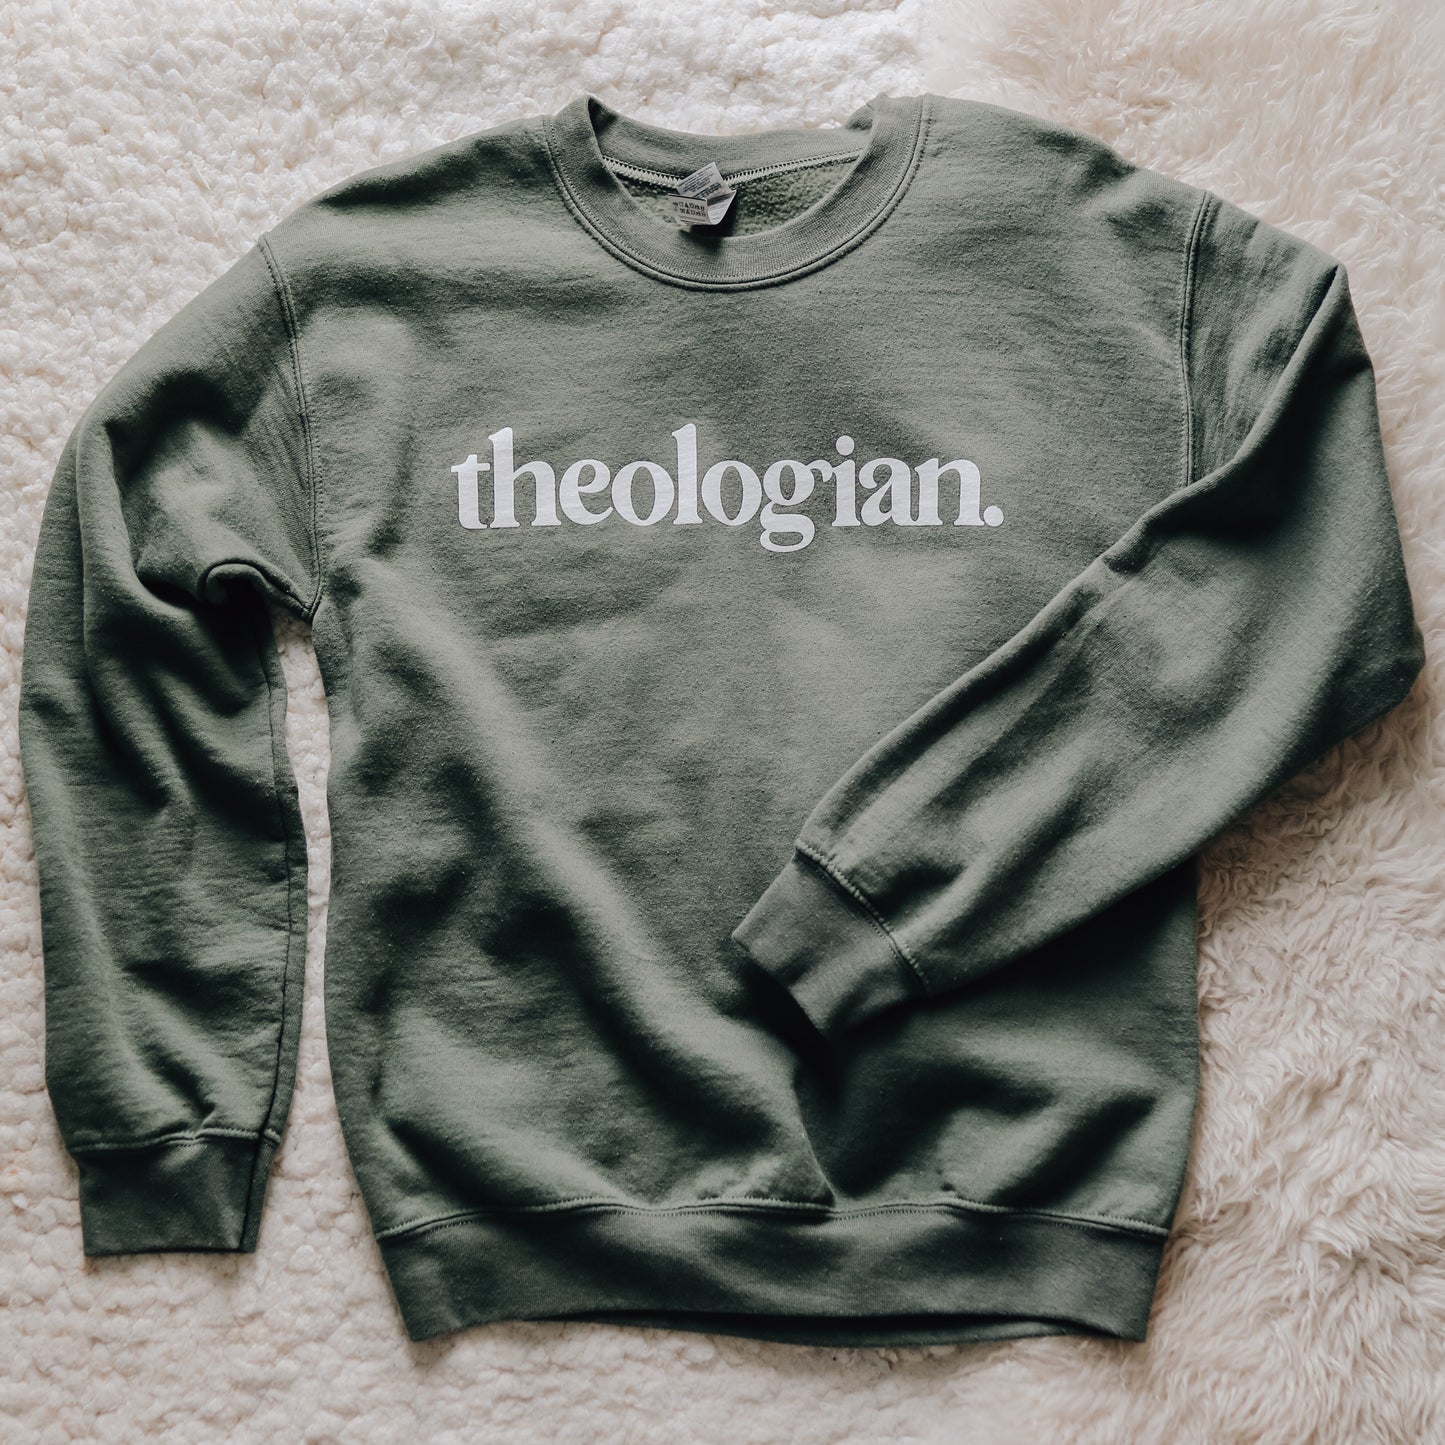 Theologian Sweatshirt - Olive